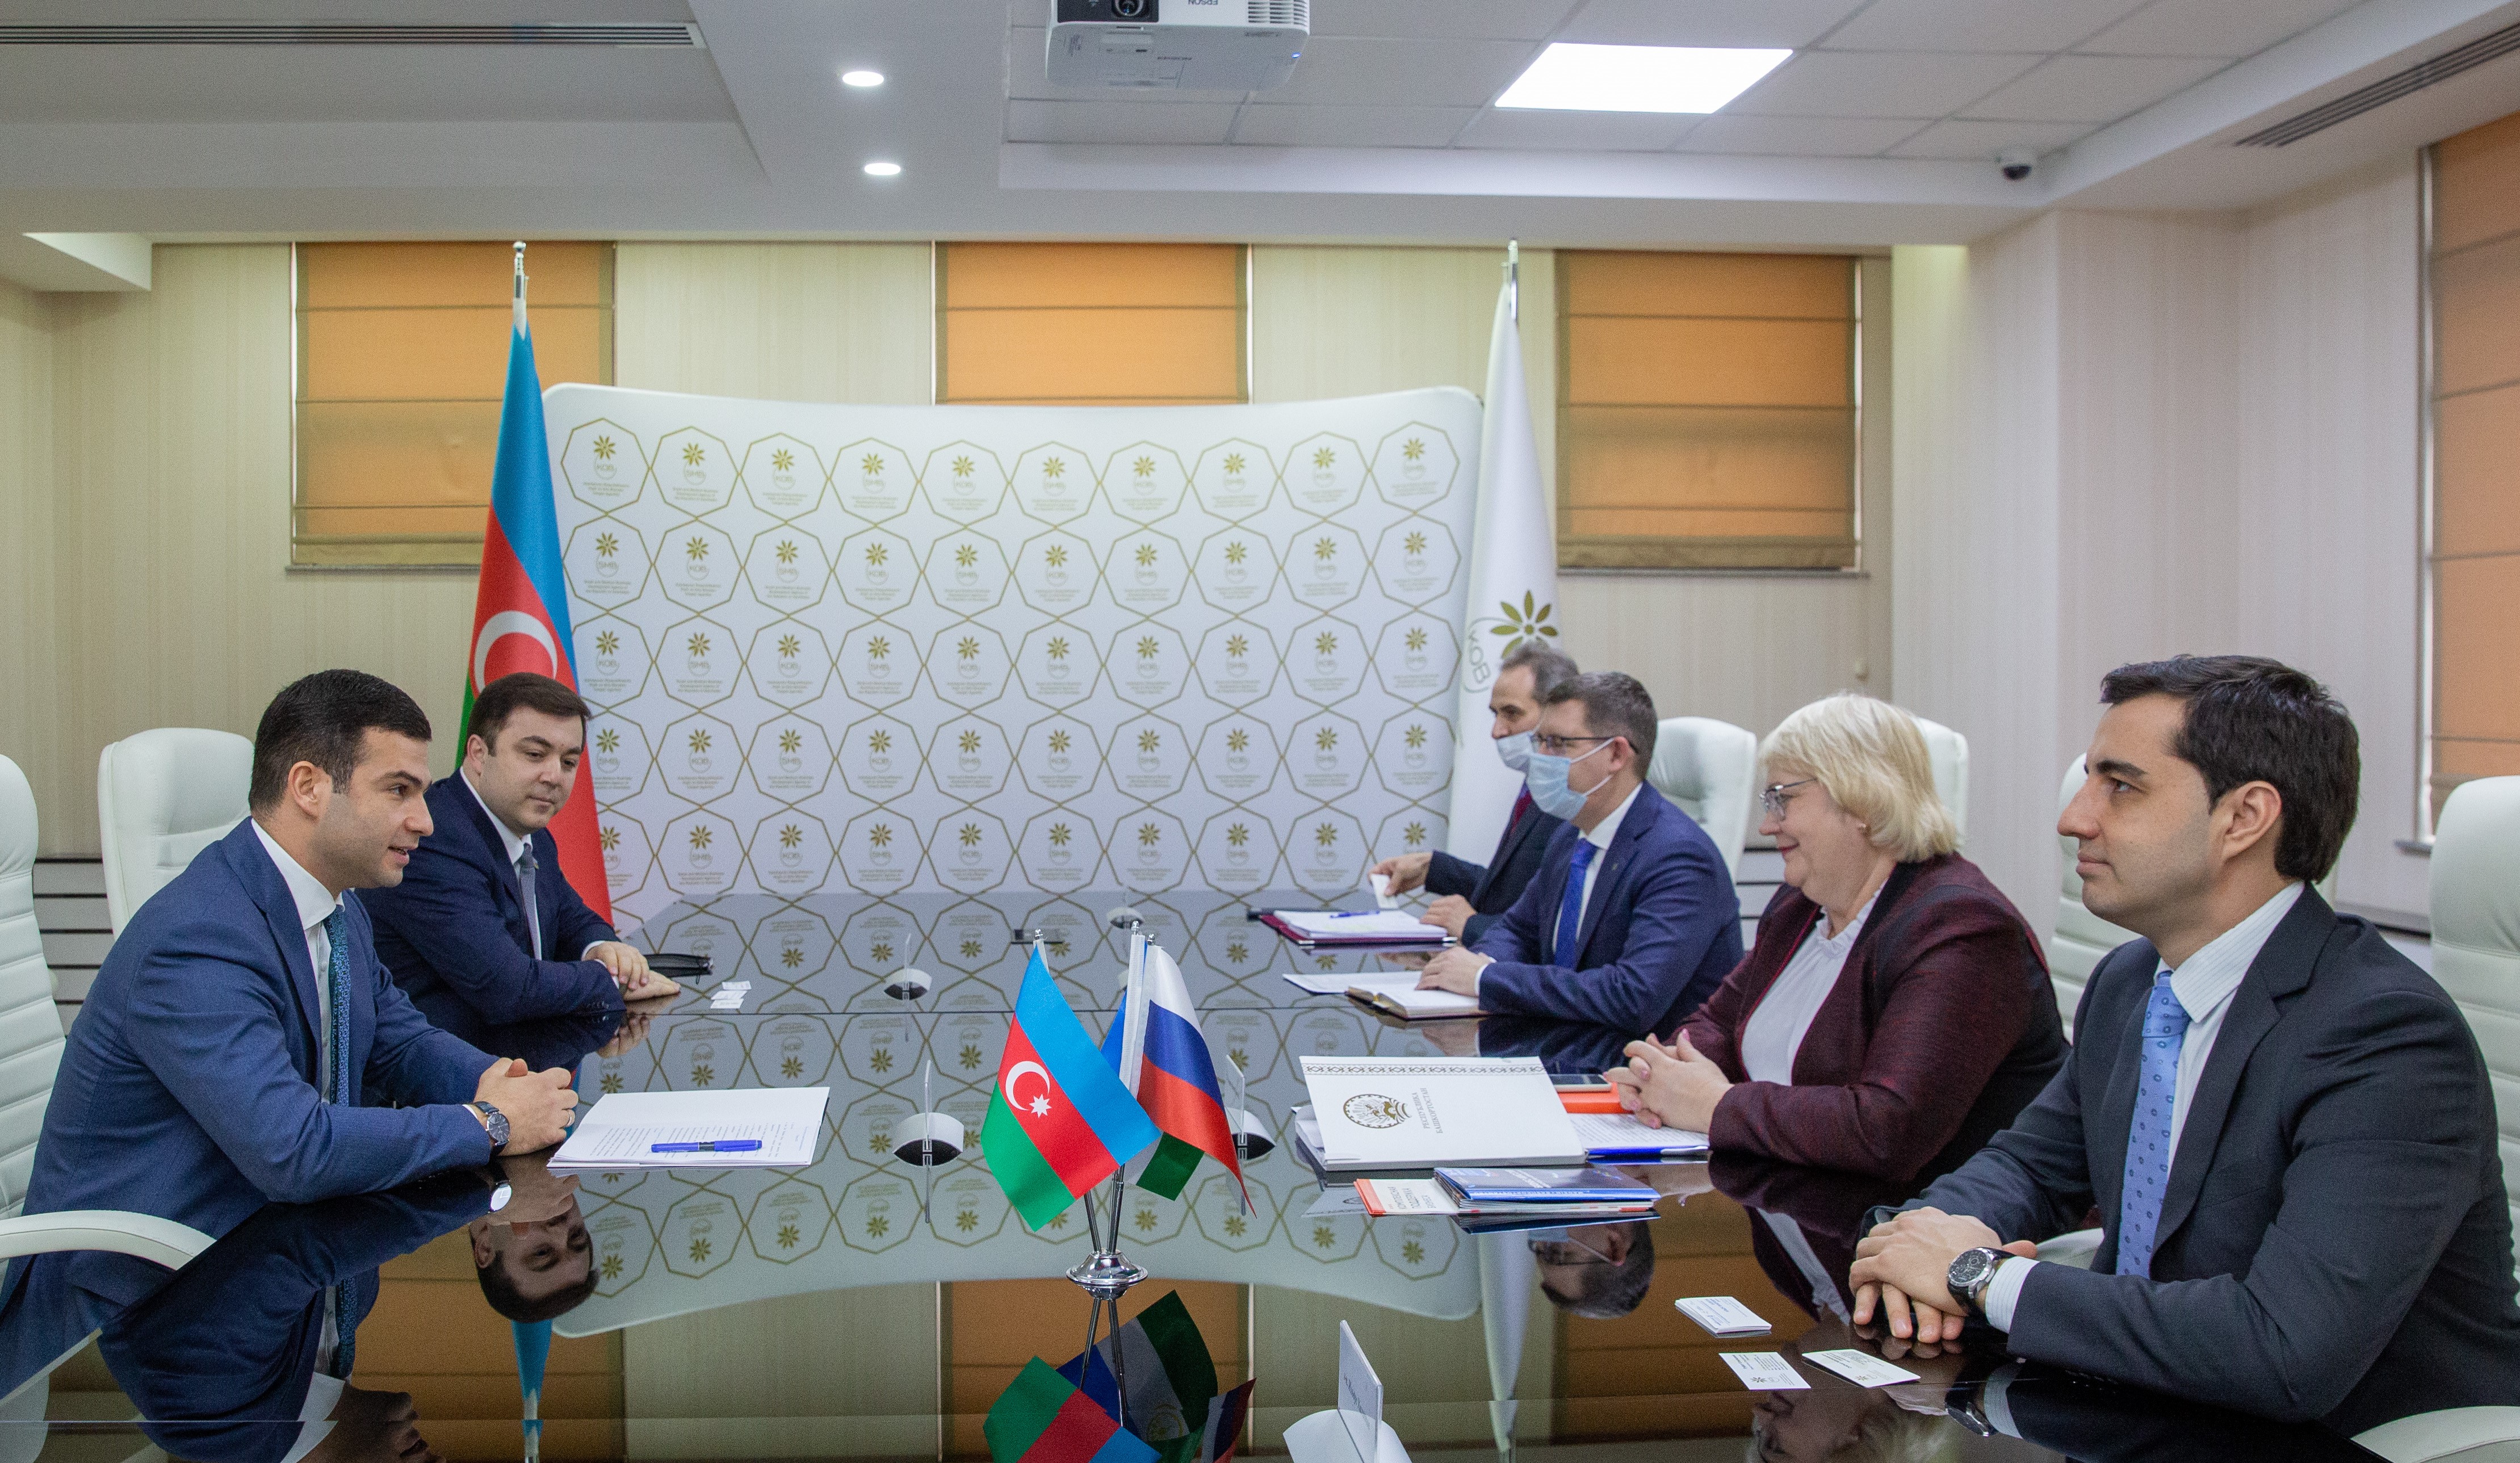 The Bashkortostan delegation visited SMBDA 